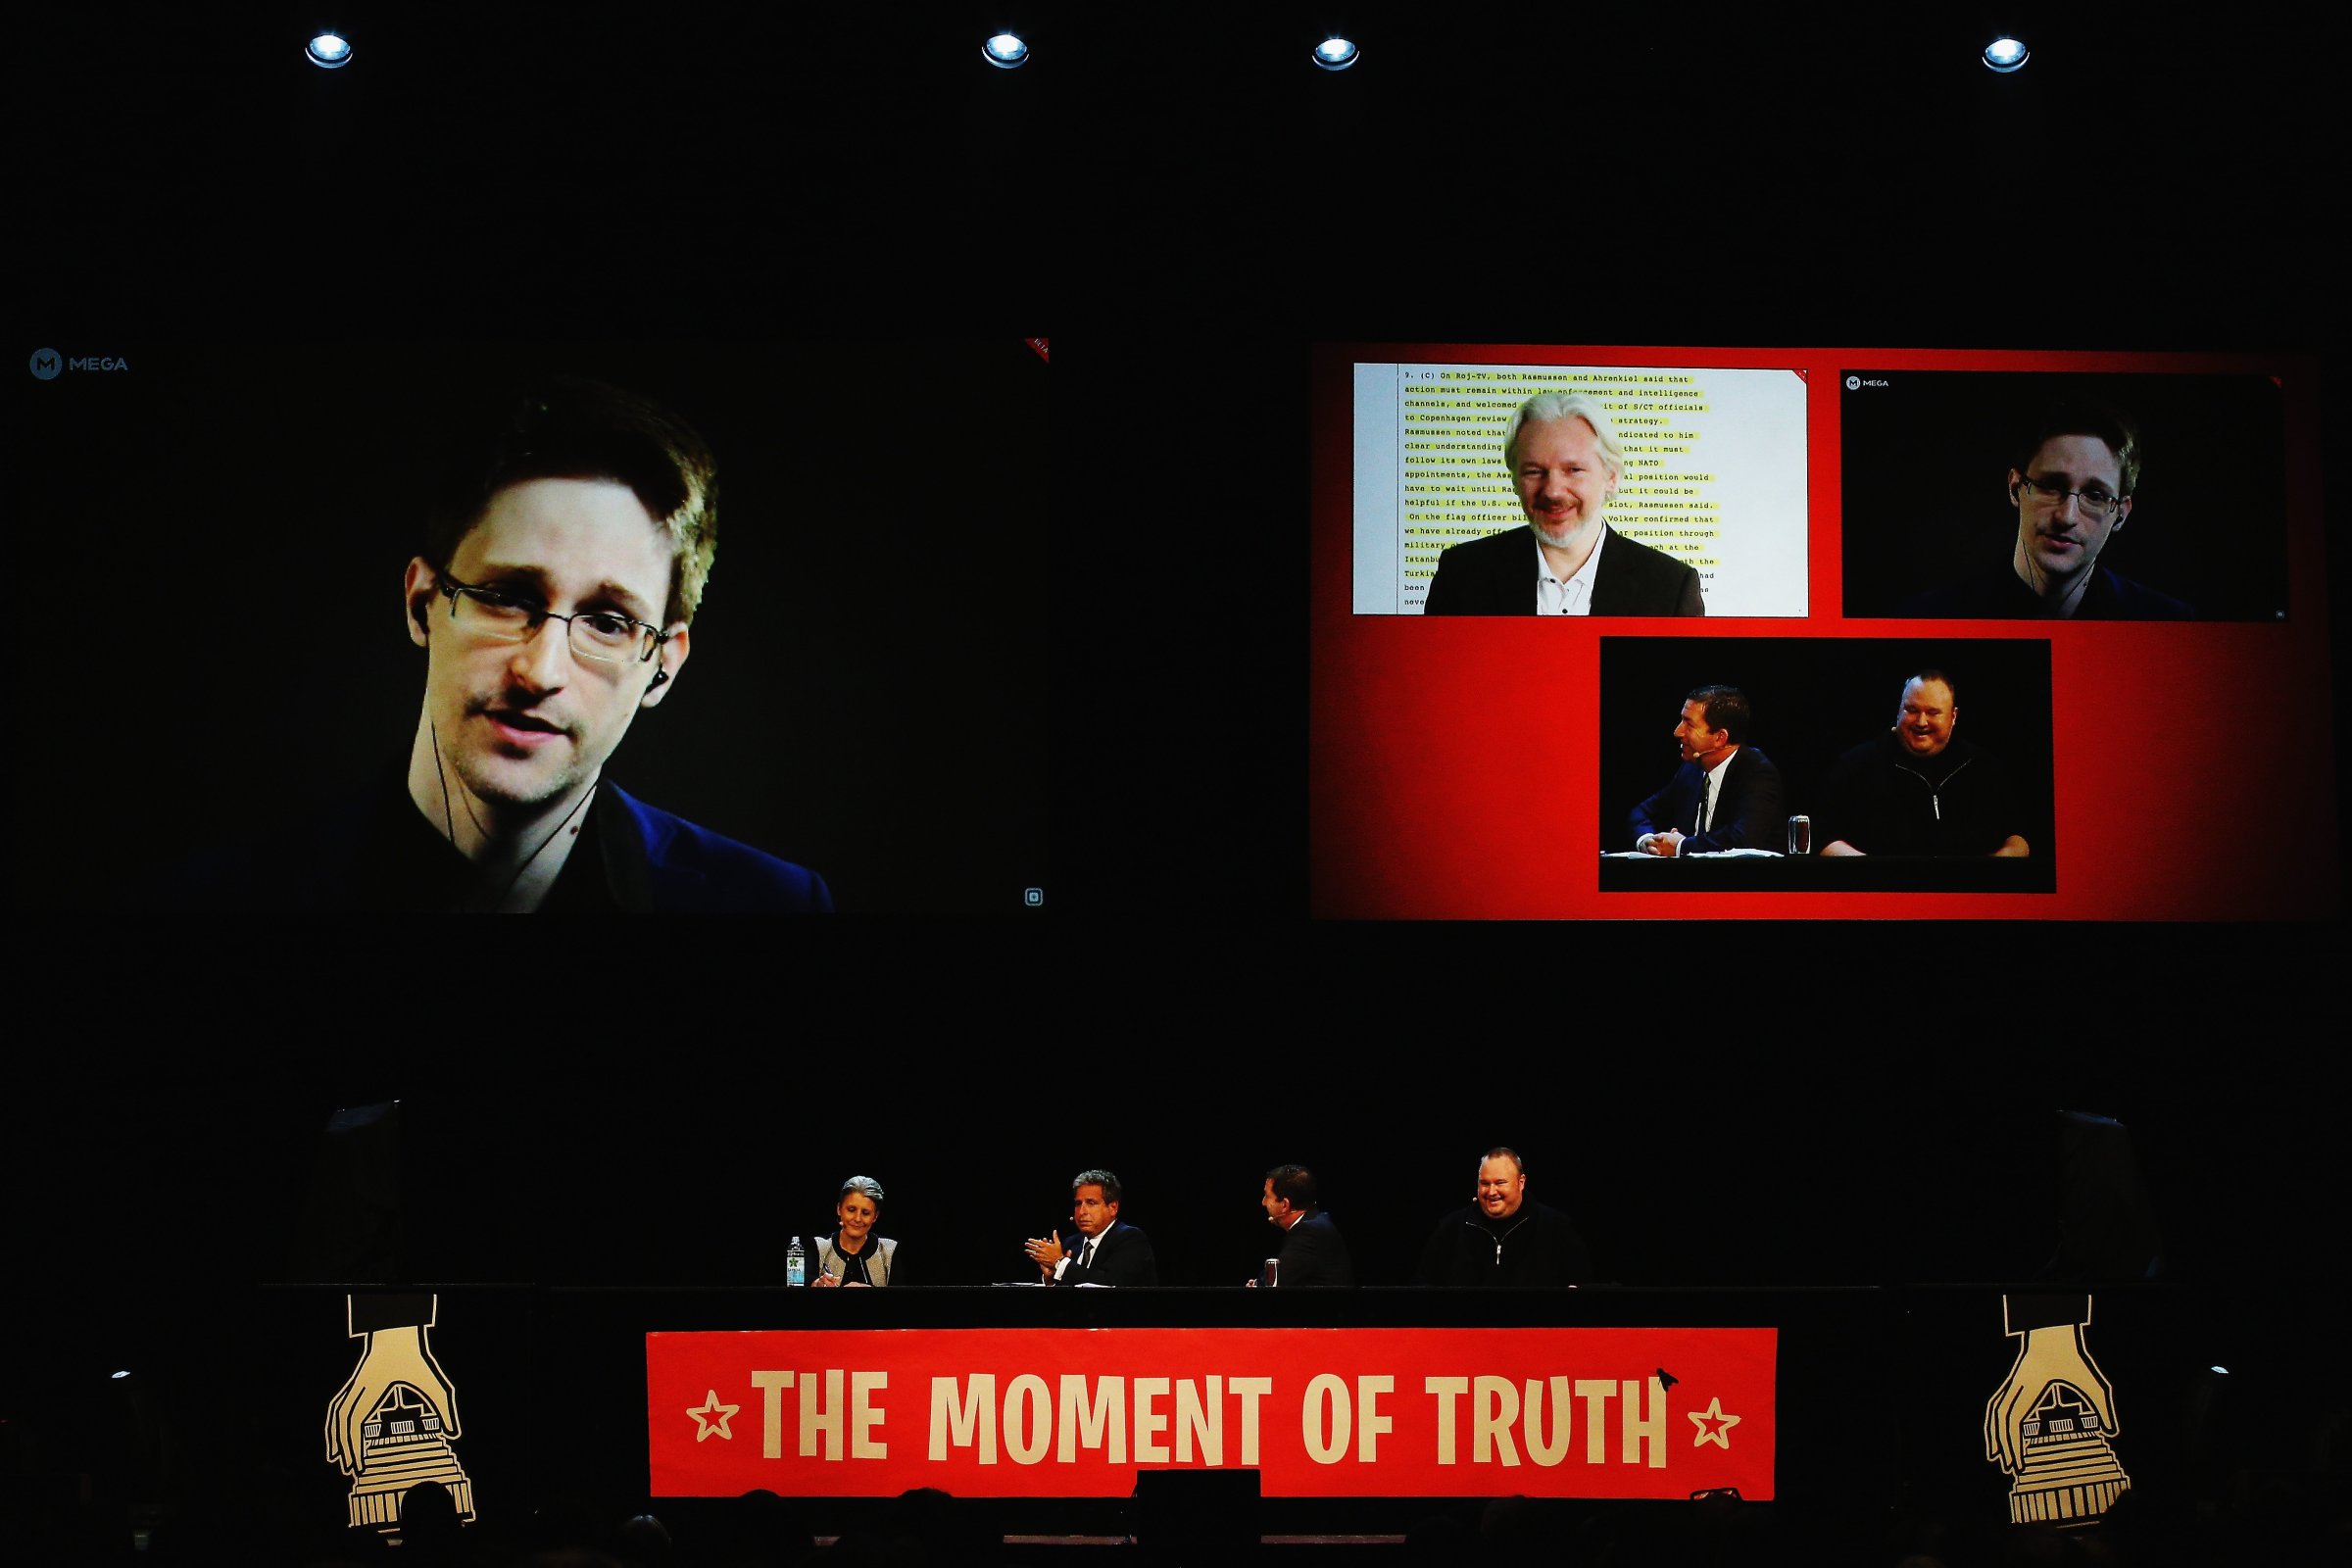 Edward Snowden Julian Assange Kim Dotcom Moment of Truth